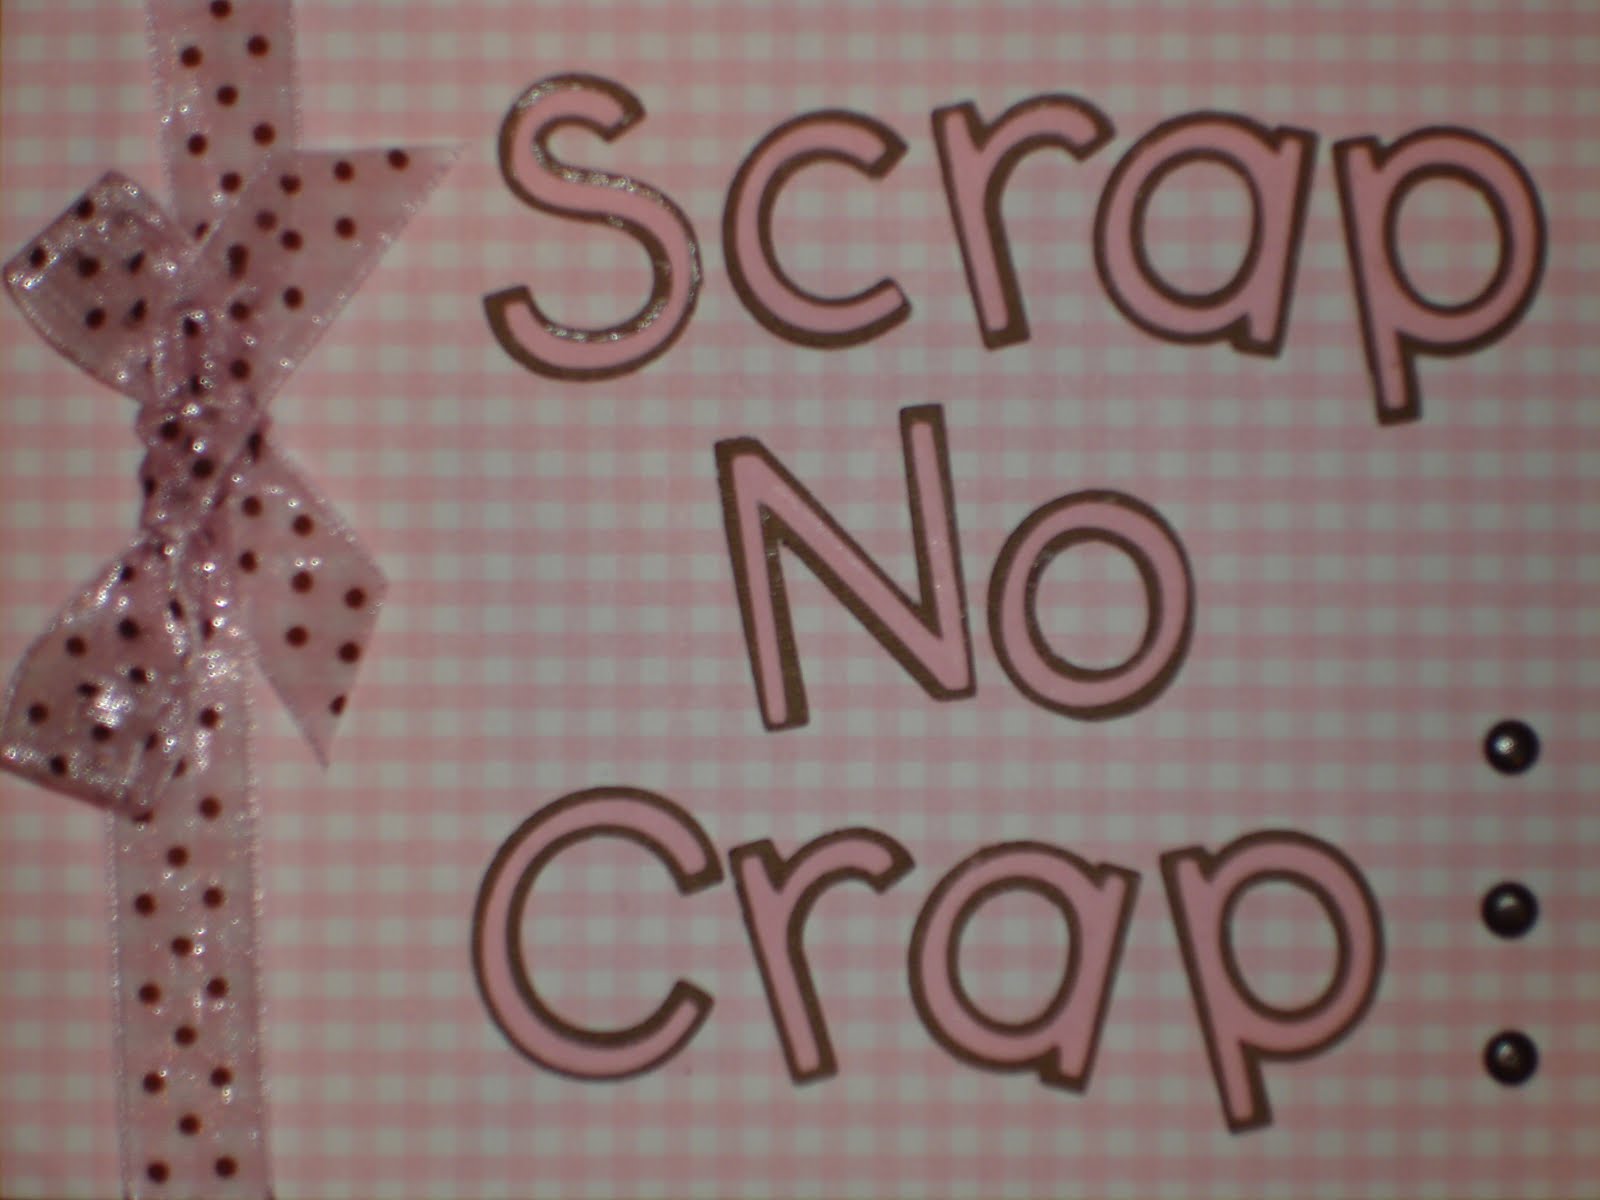 Scrap No Crap